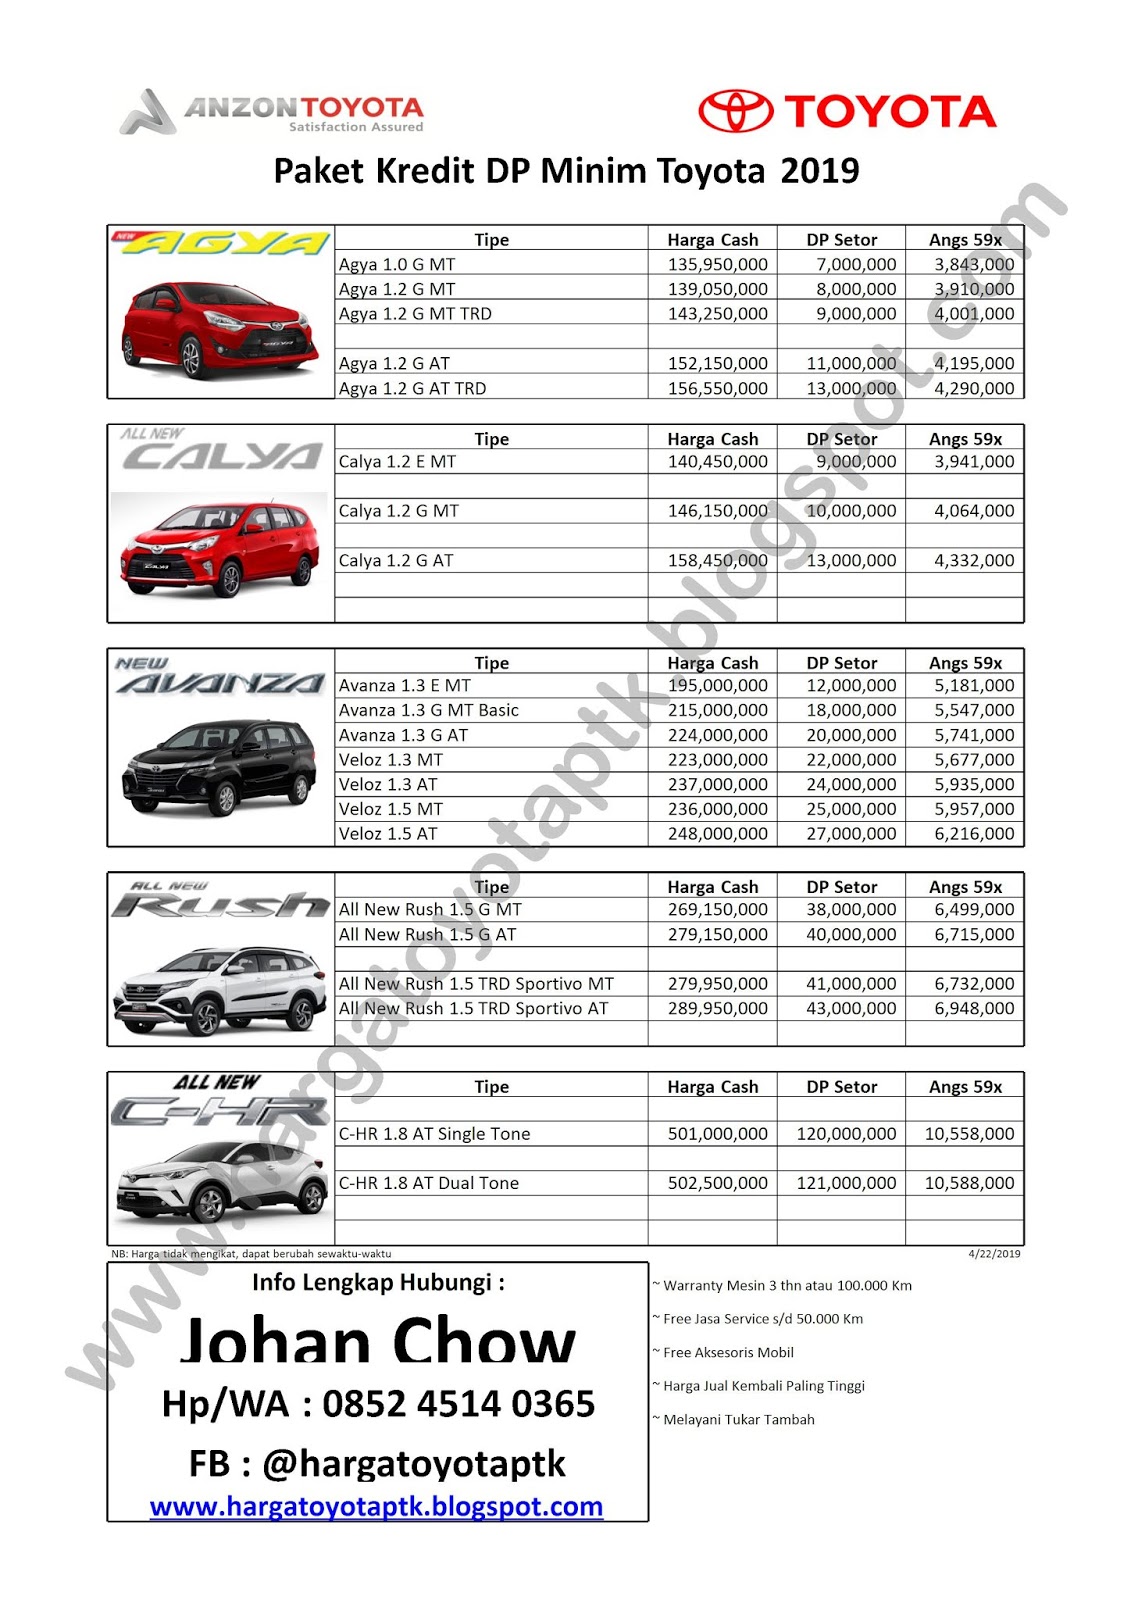 Daftar Harga Dan Paket Kredit Toyota Pontianak By Johan Chow